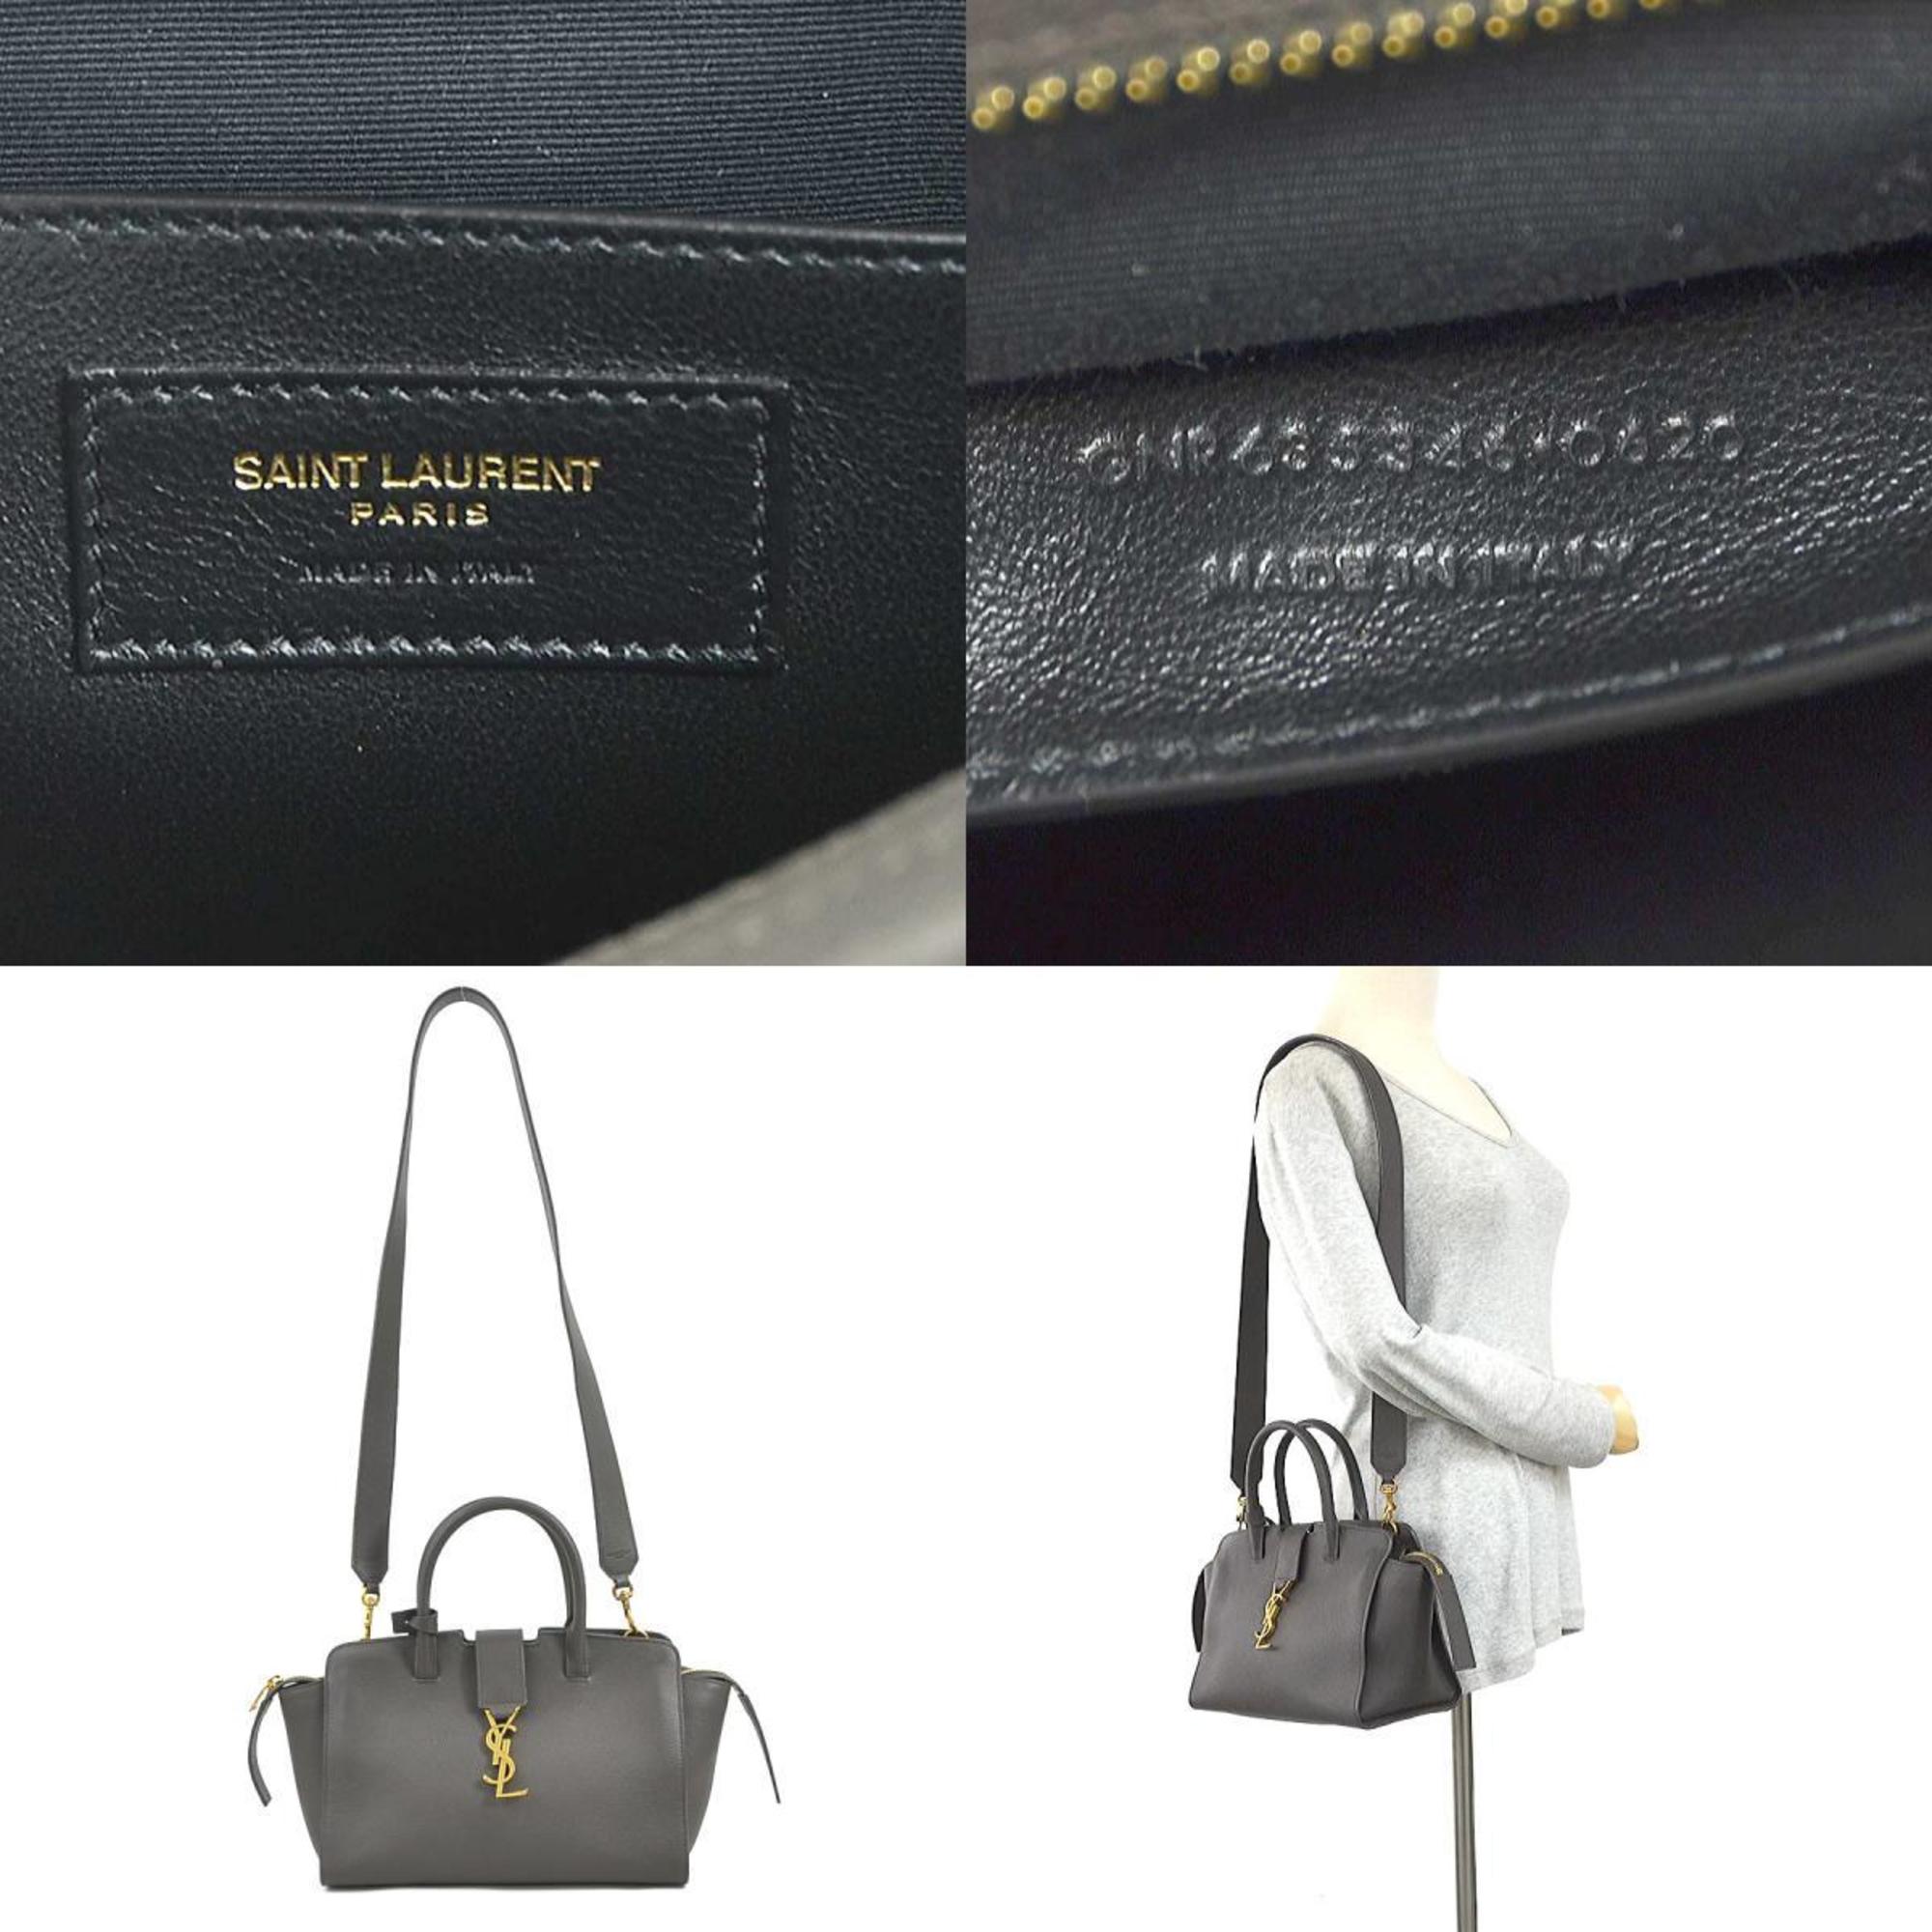 Saint Laurent SAINT LAURENT Handbag Shoulder Bag Downtown Baby Leather Grey Women's 635346 99888f